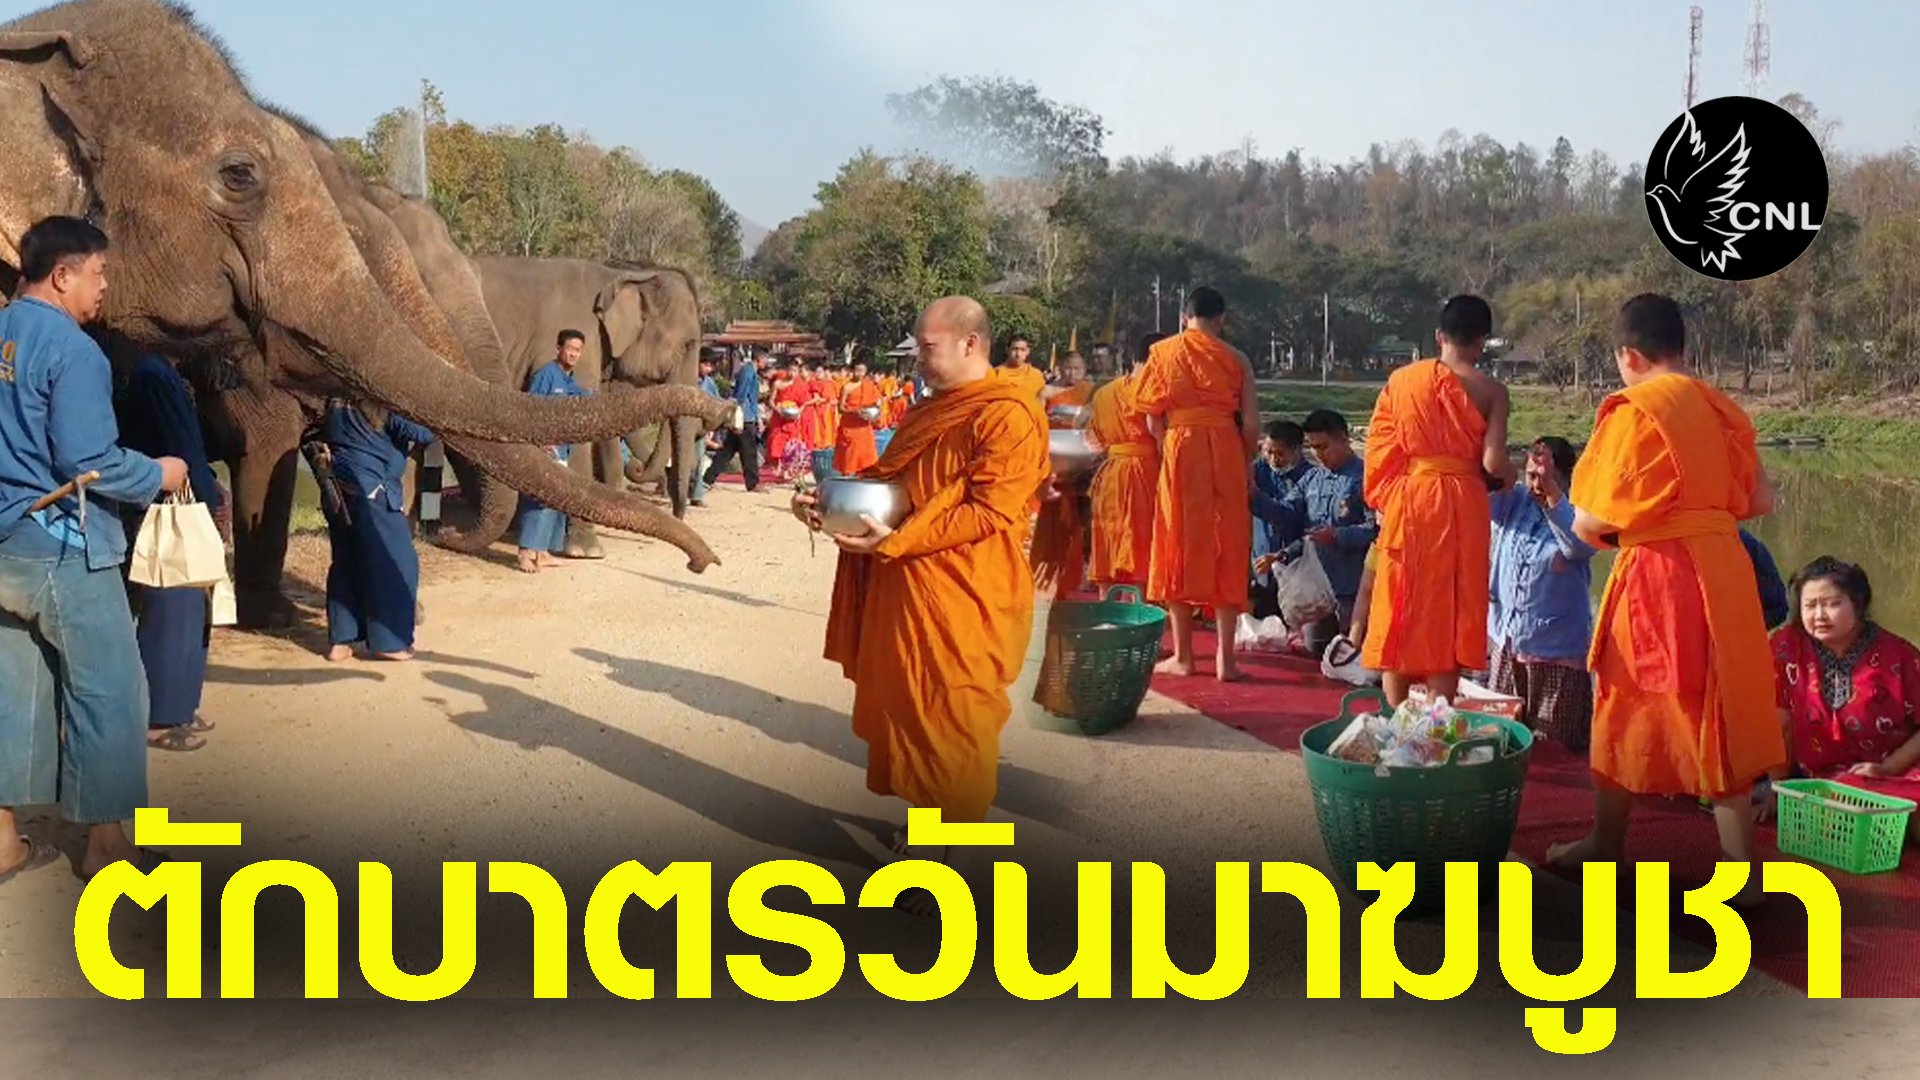 ศูนย์อนุรักษ์ช้างไทยนำช้าง16เชือกร่วมตักบาตรเนื่องในวันมาฆบูชาได้บุญทั้งคนและช้าง